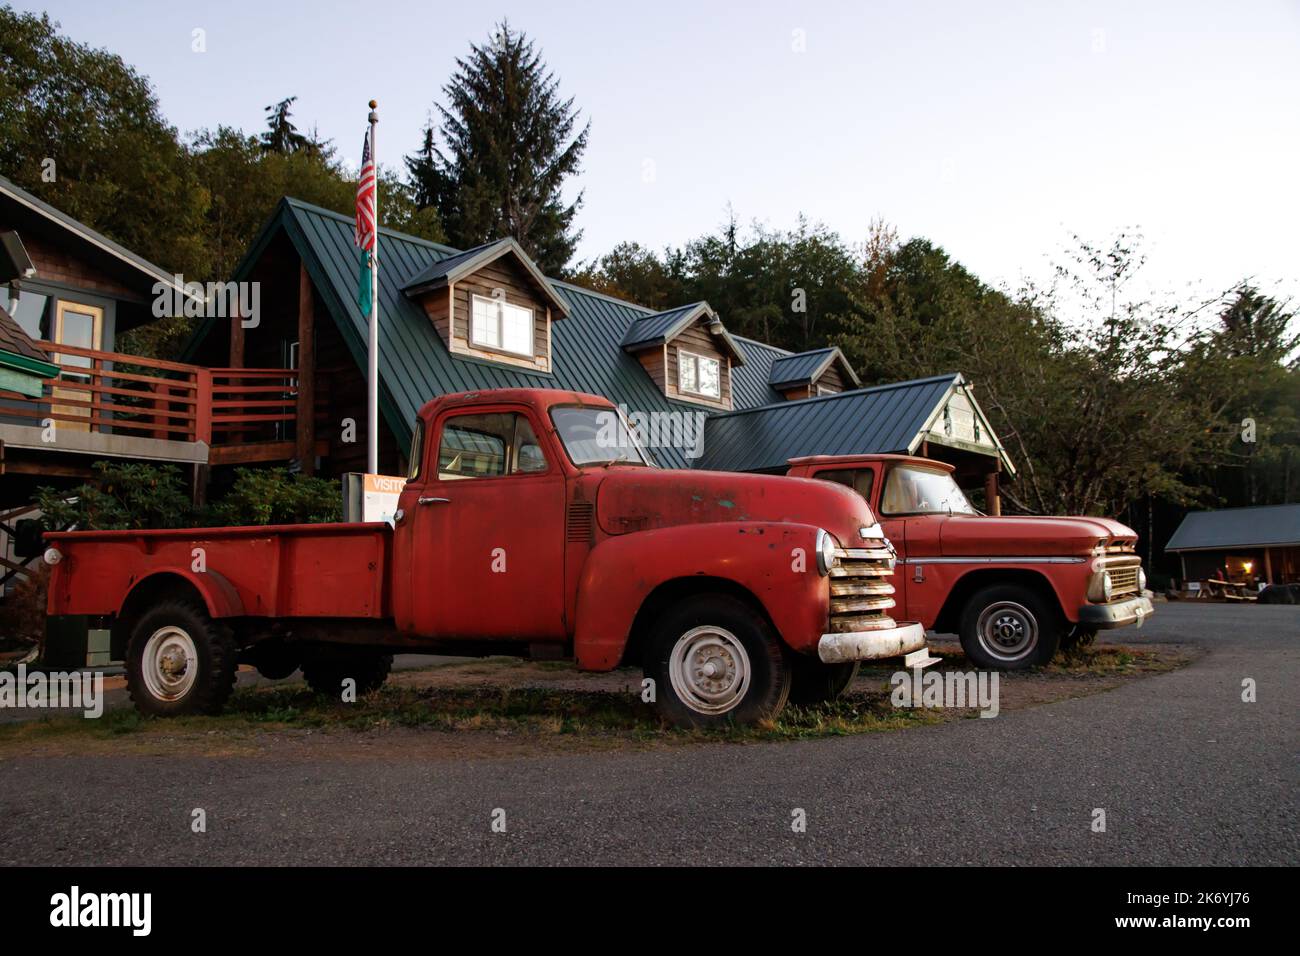 Le camion rouillé rouge de Bella de Twilight. Le légendaire camion de Bella devant le centre d'accueil de Forks à Washington Banque D'Images